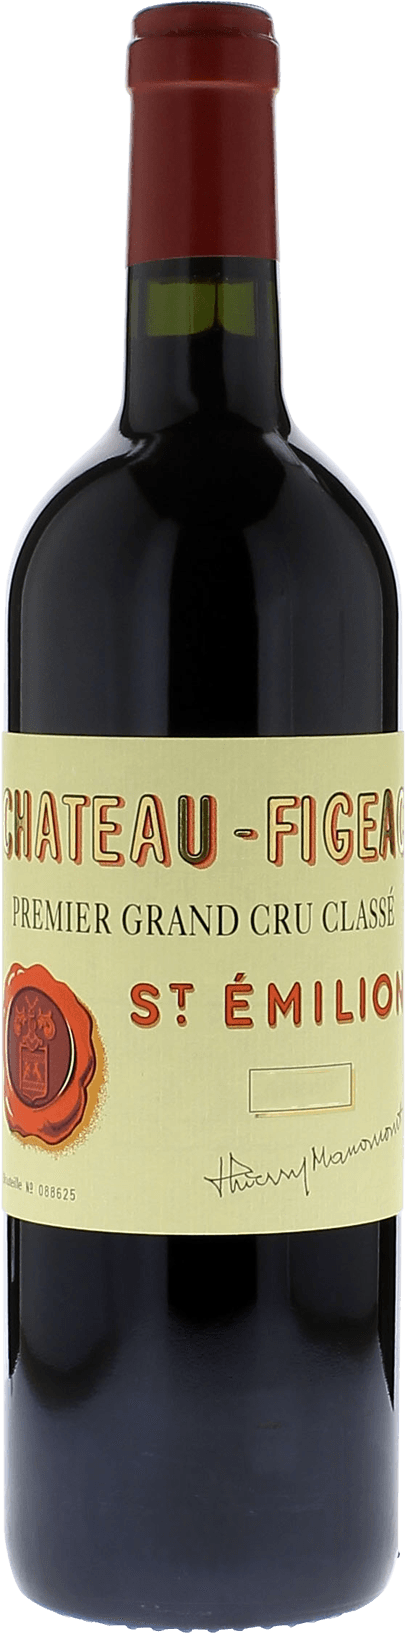 Figeac 2001 1er Grand cru class Saint-Emilion, Bordeaux rouge